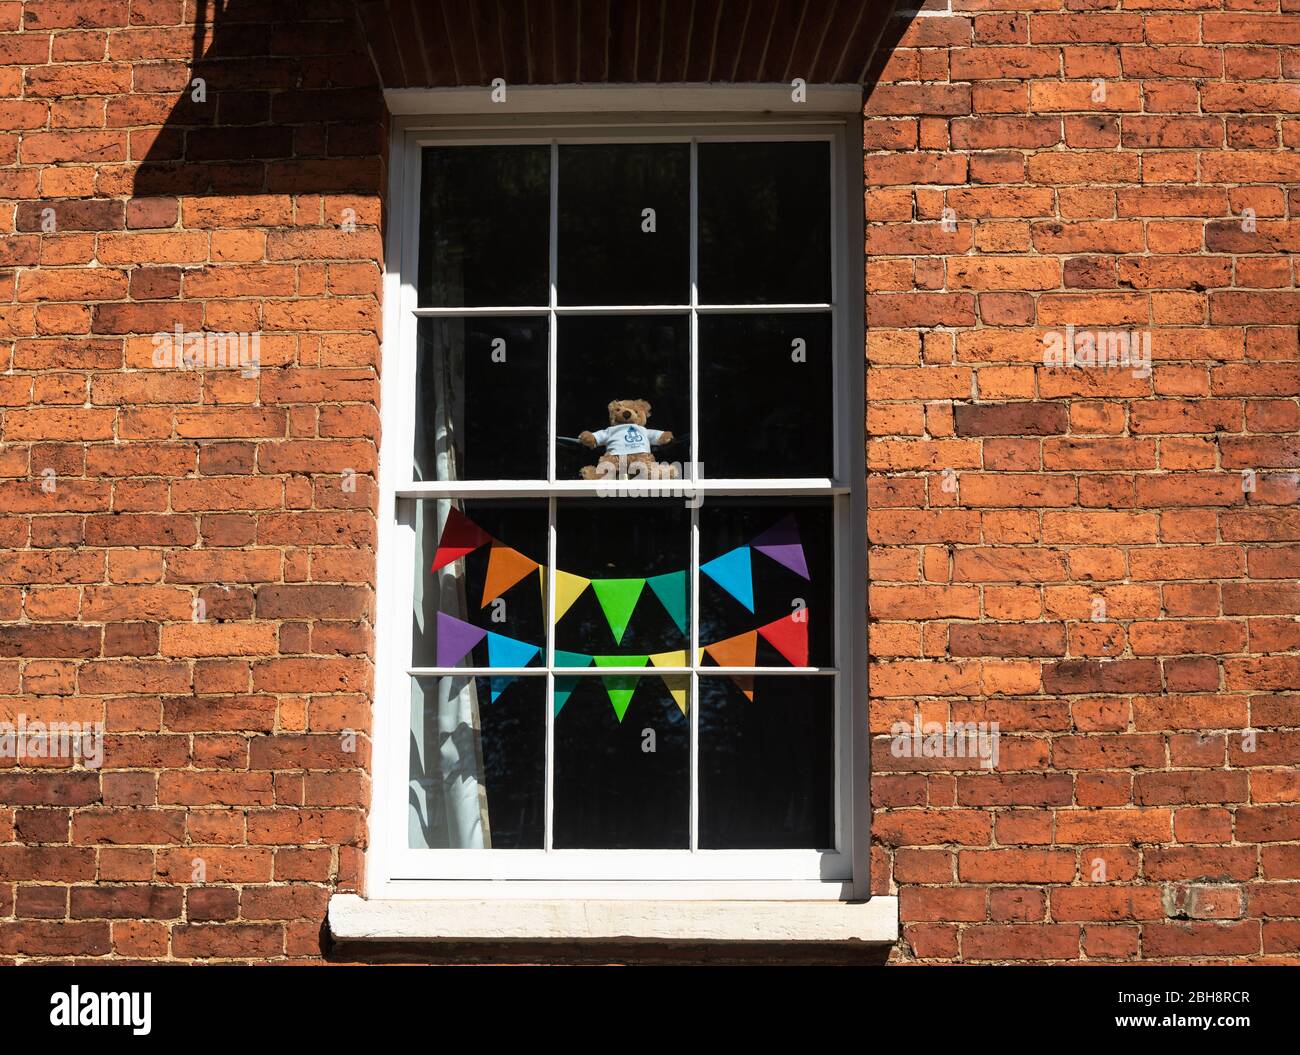 24 Aprile Banbury, Oxfordshire, UK . Le case di Banbury mostrano immagini di arcobaleni, simbolo di speranza in tempi bui, che rappresentano gratitudine e grazie al personale NHS e a tutti i principali lavoratori per il loro servizio durante la pandemia del coronavirus. Credit Bridget Catterall/Alamy Live News Foto Stock